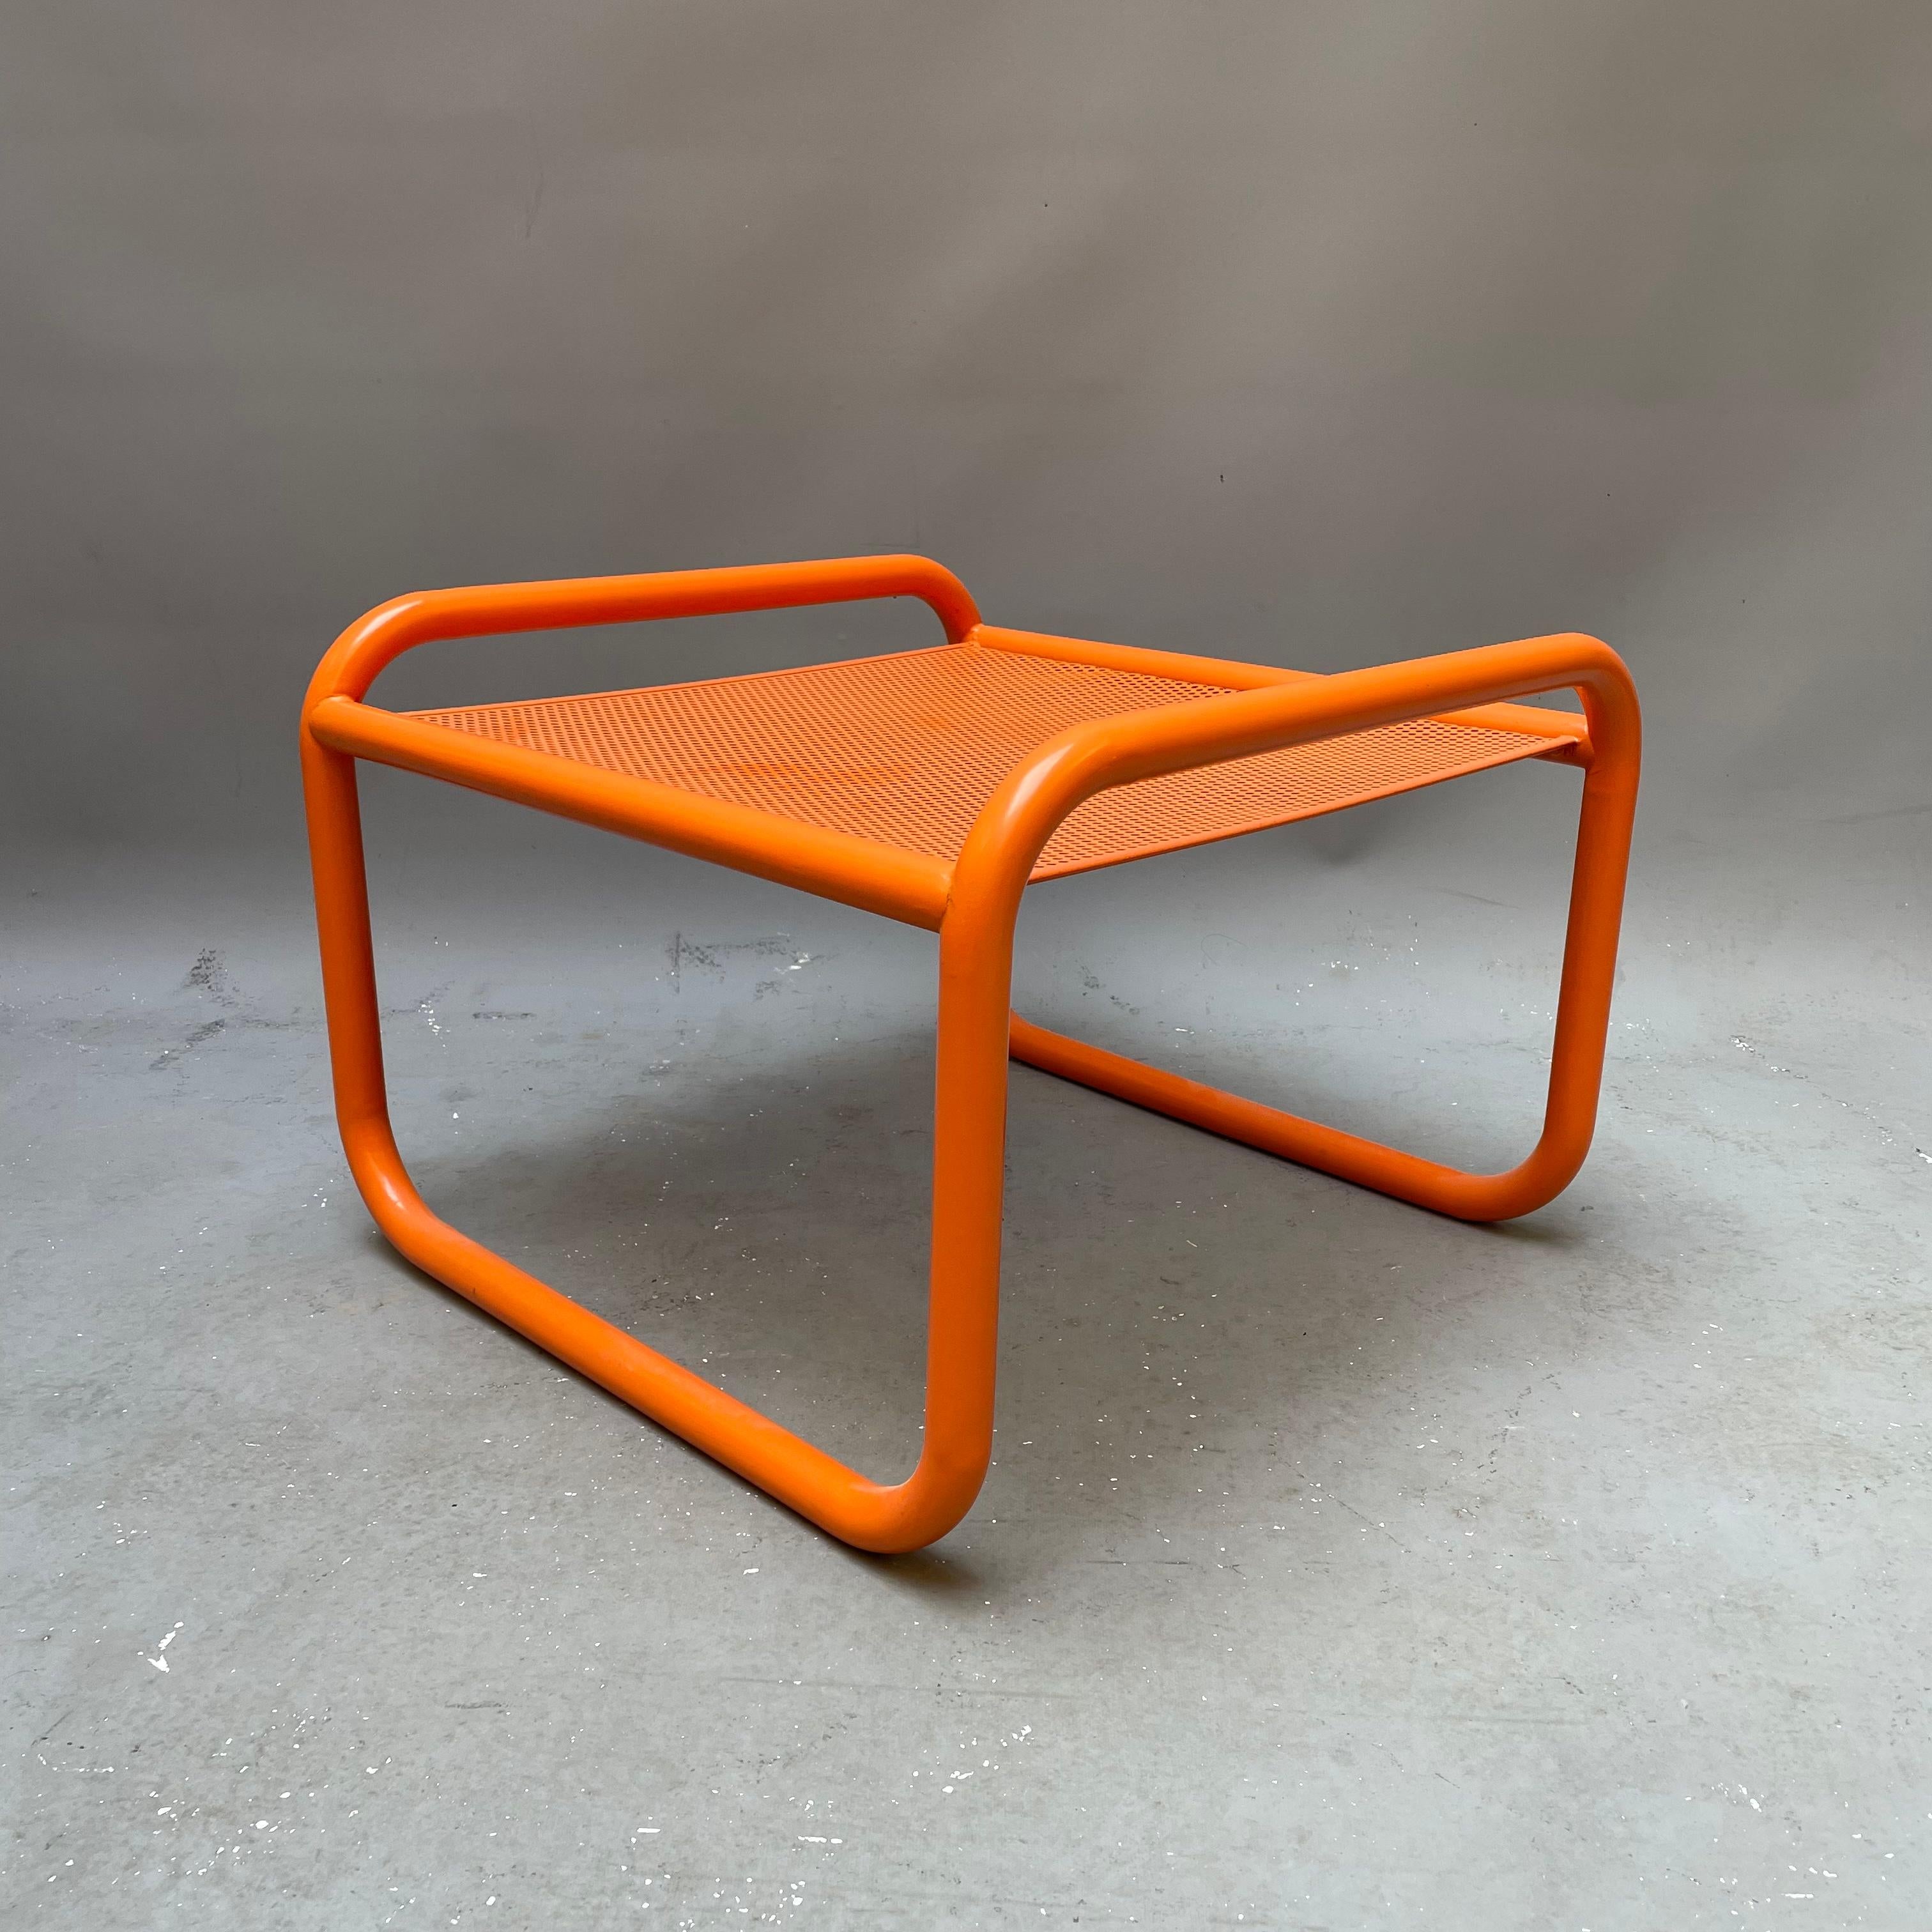 Composée d'acier et de tissus aux motifs originaux et inédits, Locus Solus est la collection conçue par le flair imprévisible de Gae Aulenti en 1964. Le châssis de la chaise Locus Solus est constitué de tubes en acier inoxydable peint. La structure